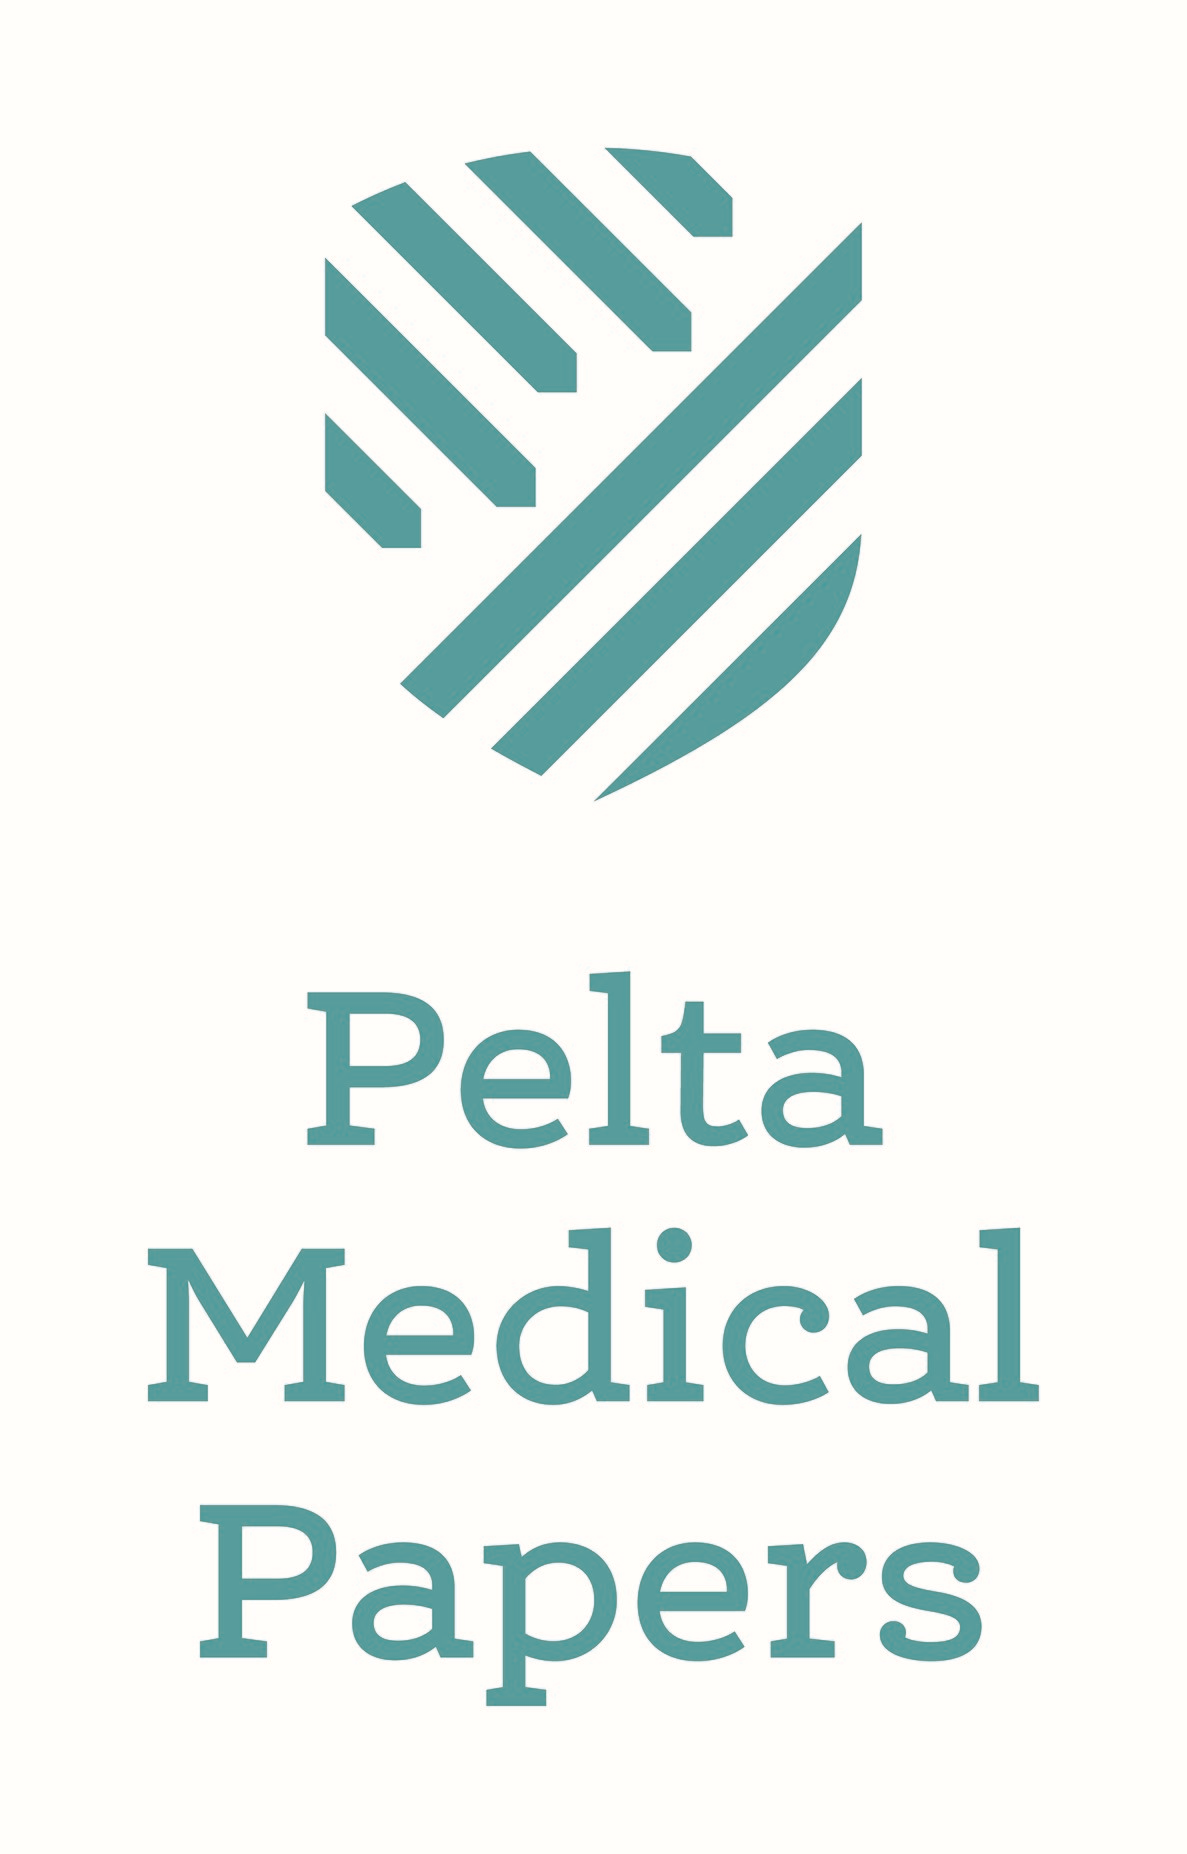 Pelta Medical Papers Ltd